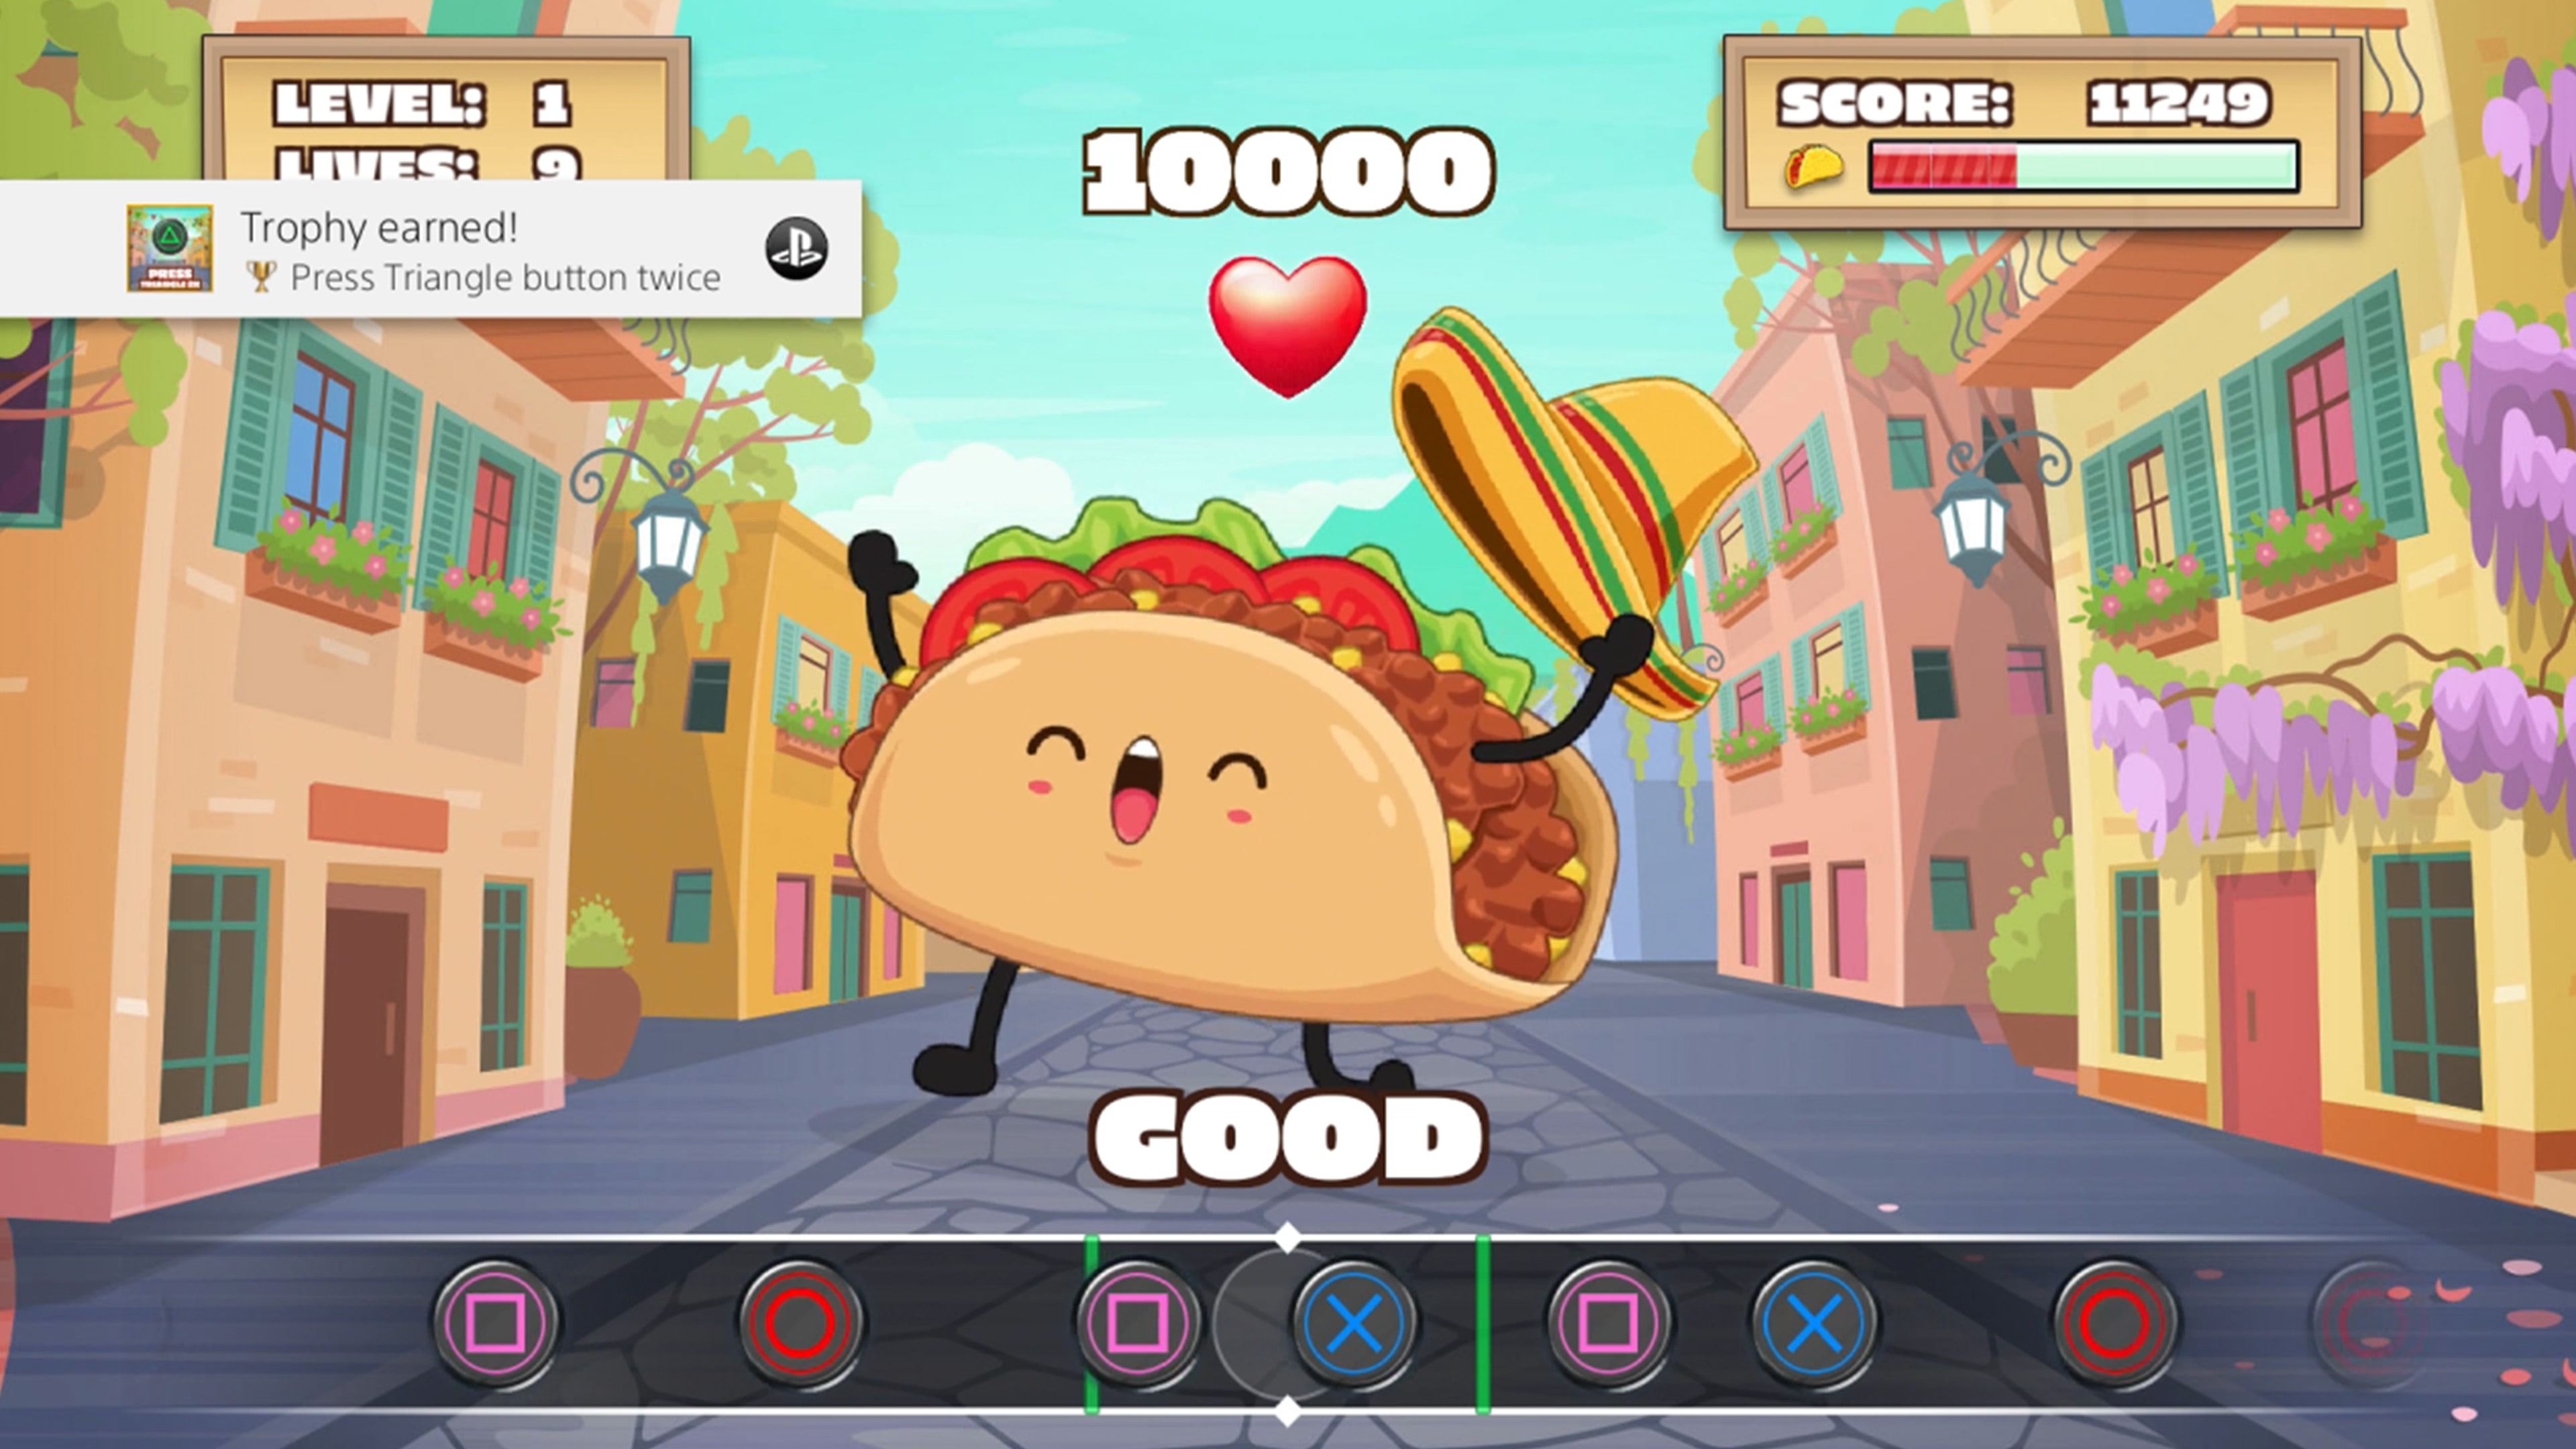 Papa's Taco Mia To Go! on the App Store